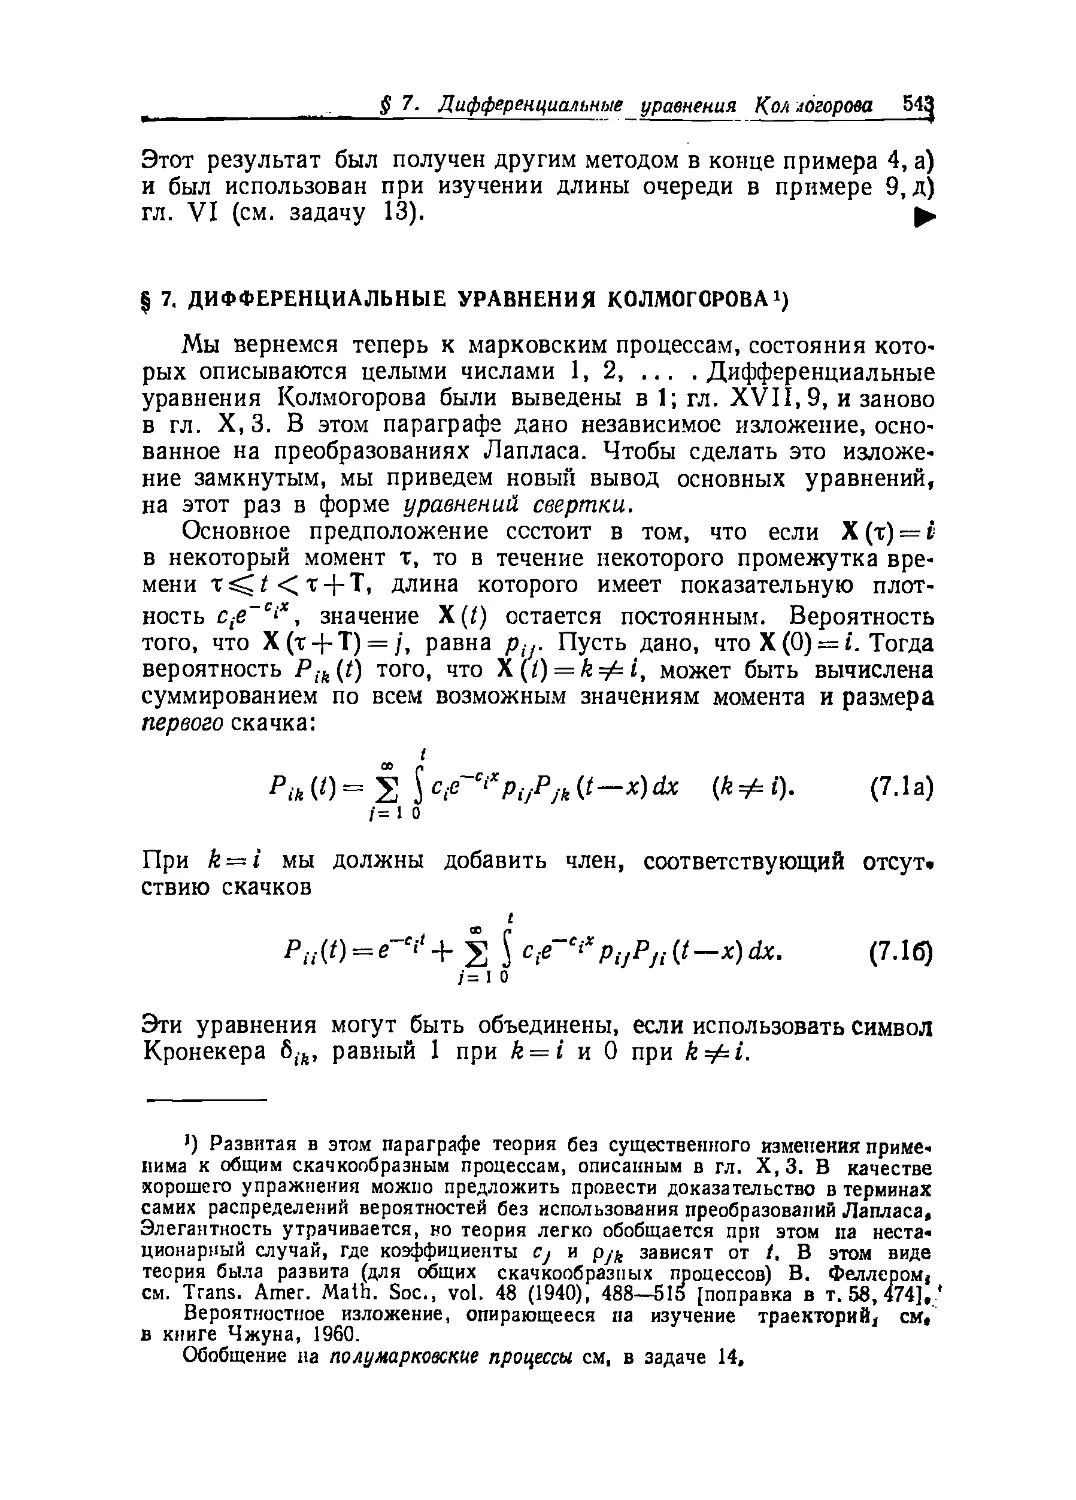 § 7. Дифференциальные уравнения Колмогорова